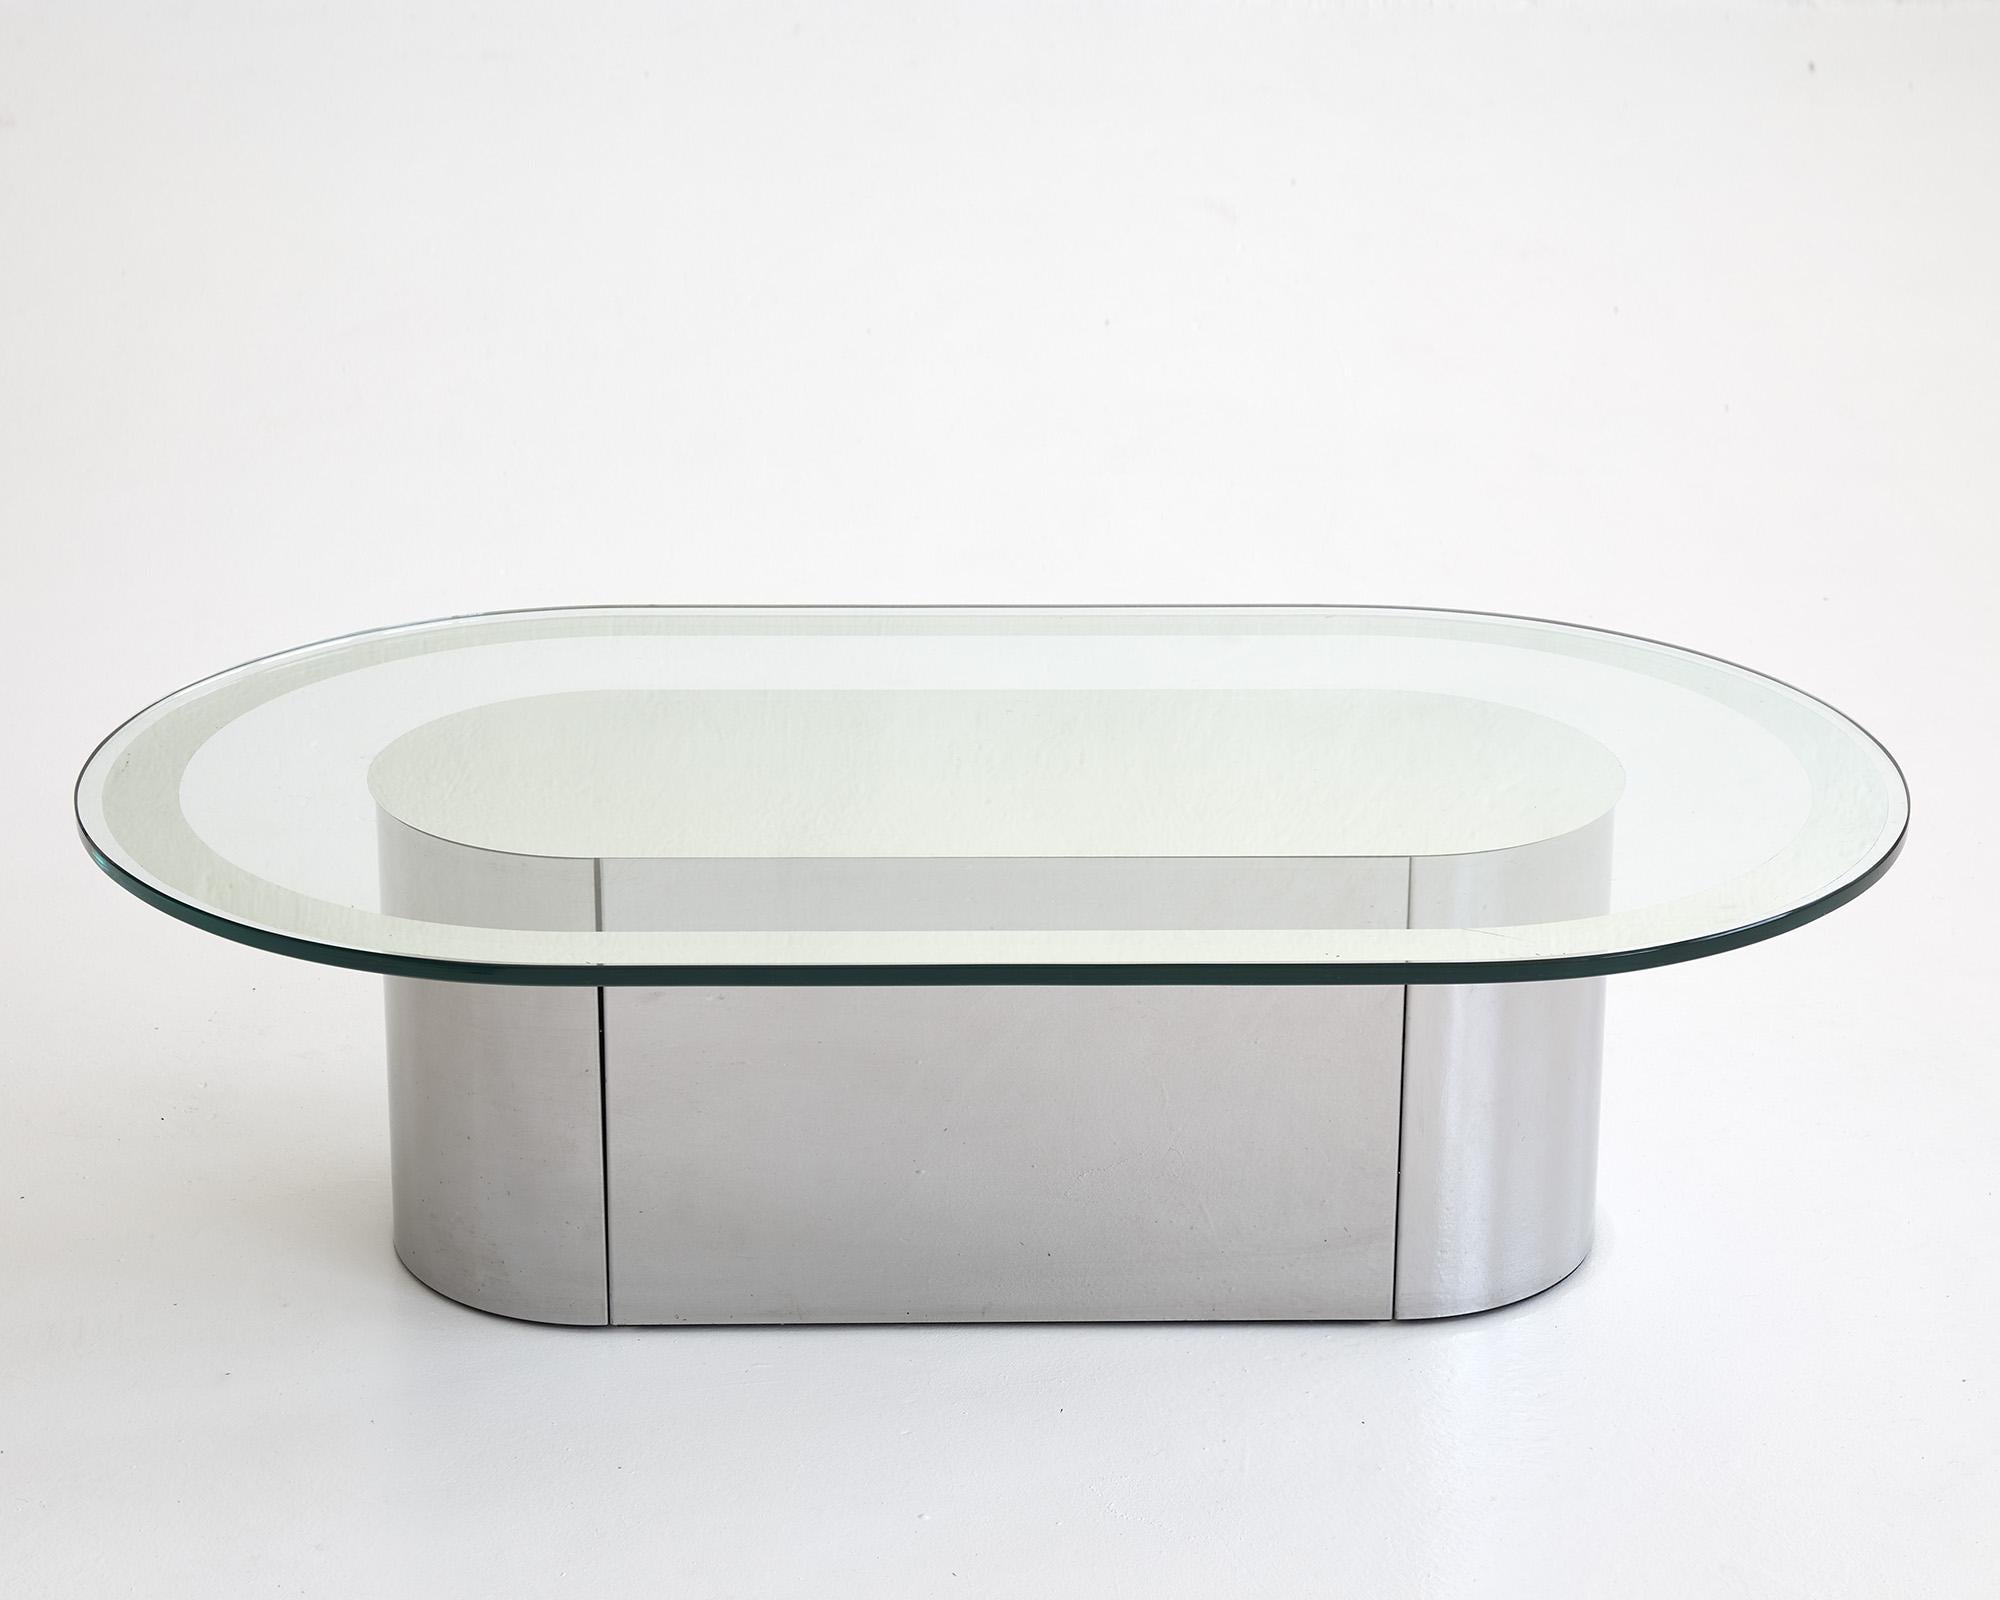 Table basse très élégante et de grande qualité, probablement fabriquée en Italie vers 1970.

Le plateau ovale en verre présente un motif incurvé incrusté composé de deux lignes qui créent un effet d'optique intéressant.

La base en métal poli miroir